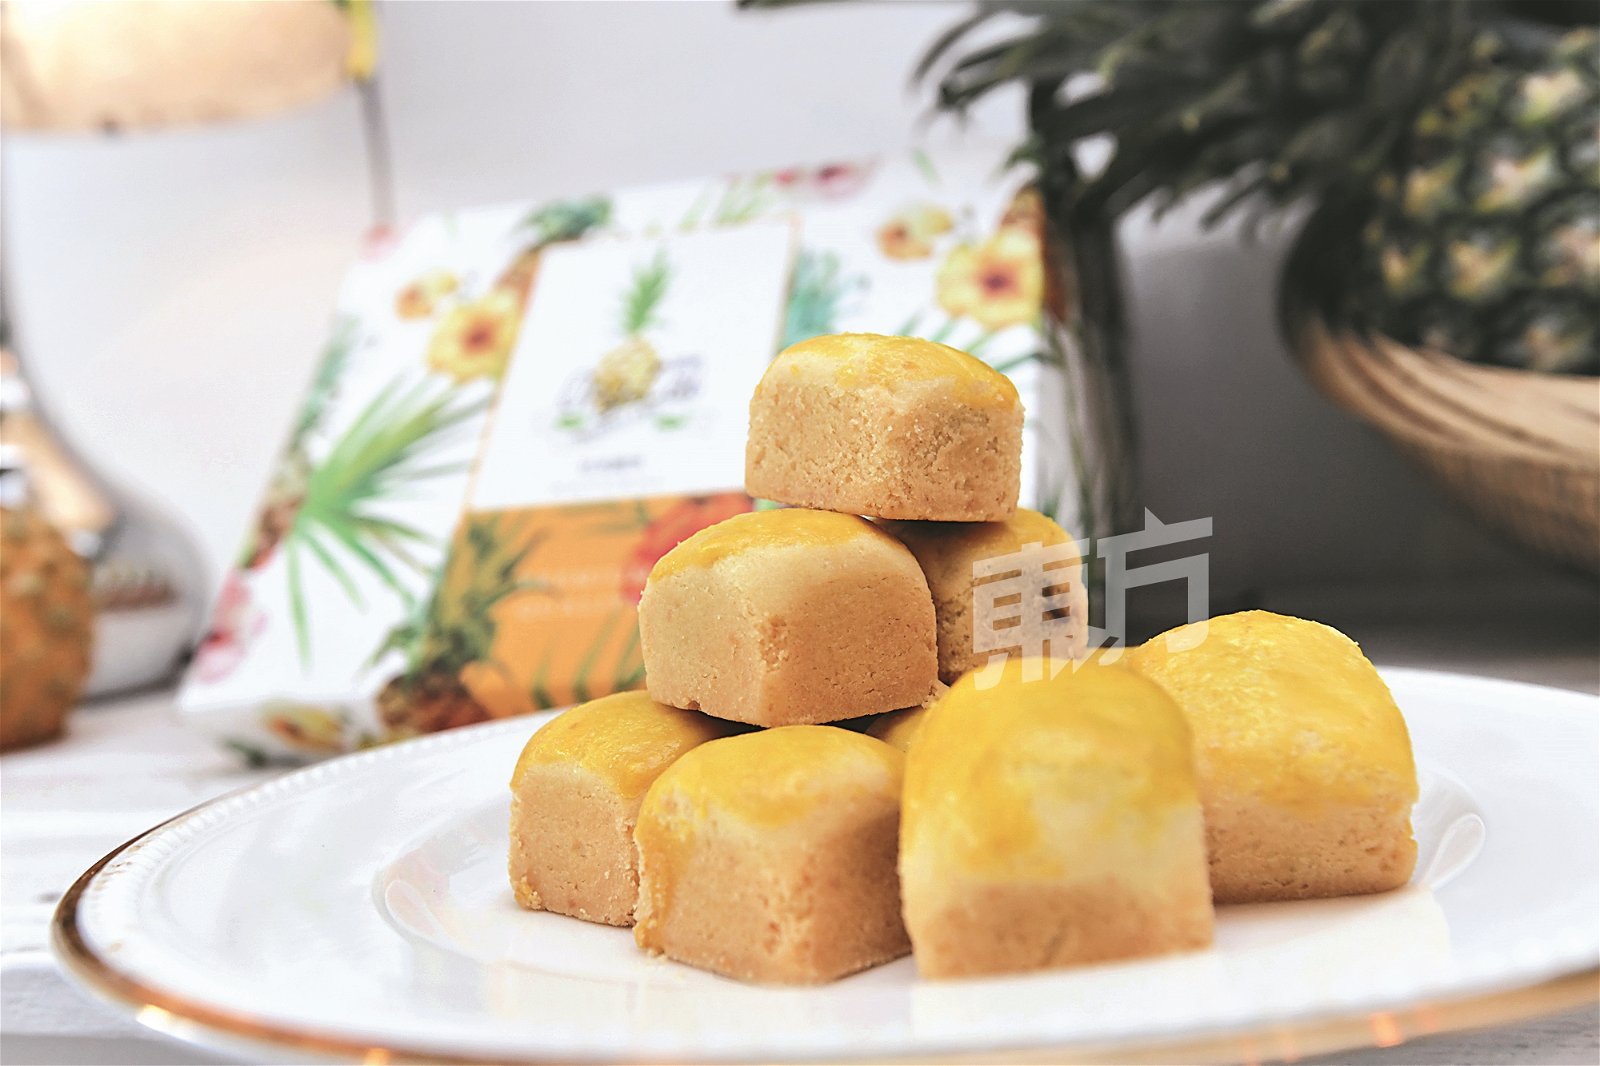 “旺来”所推出的黄梨饼“旺来饼”与市面上一般的黄梨饼不同，其形状较小，让人食而不腻，因此也称为“一口酥”。